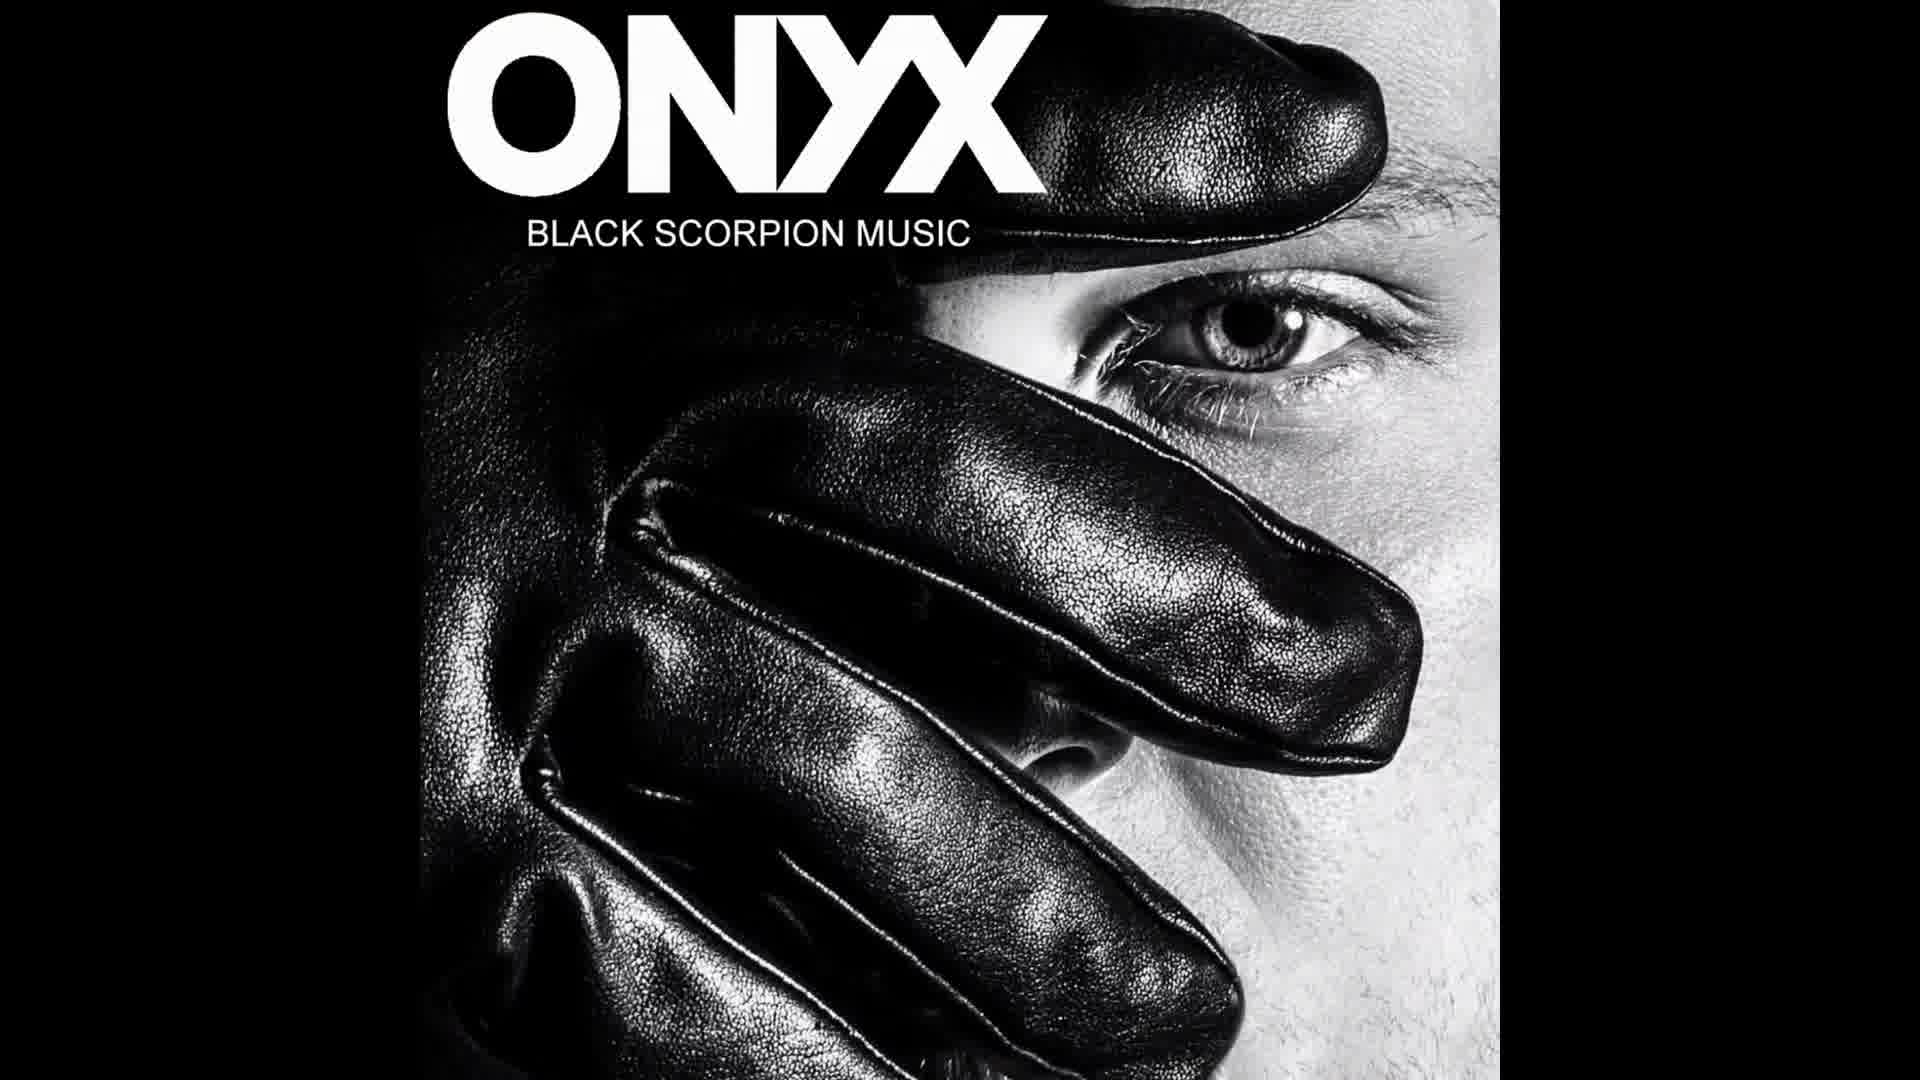 Black Scorpion Music - Onyx